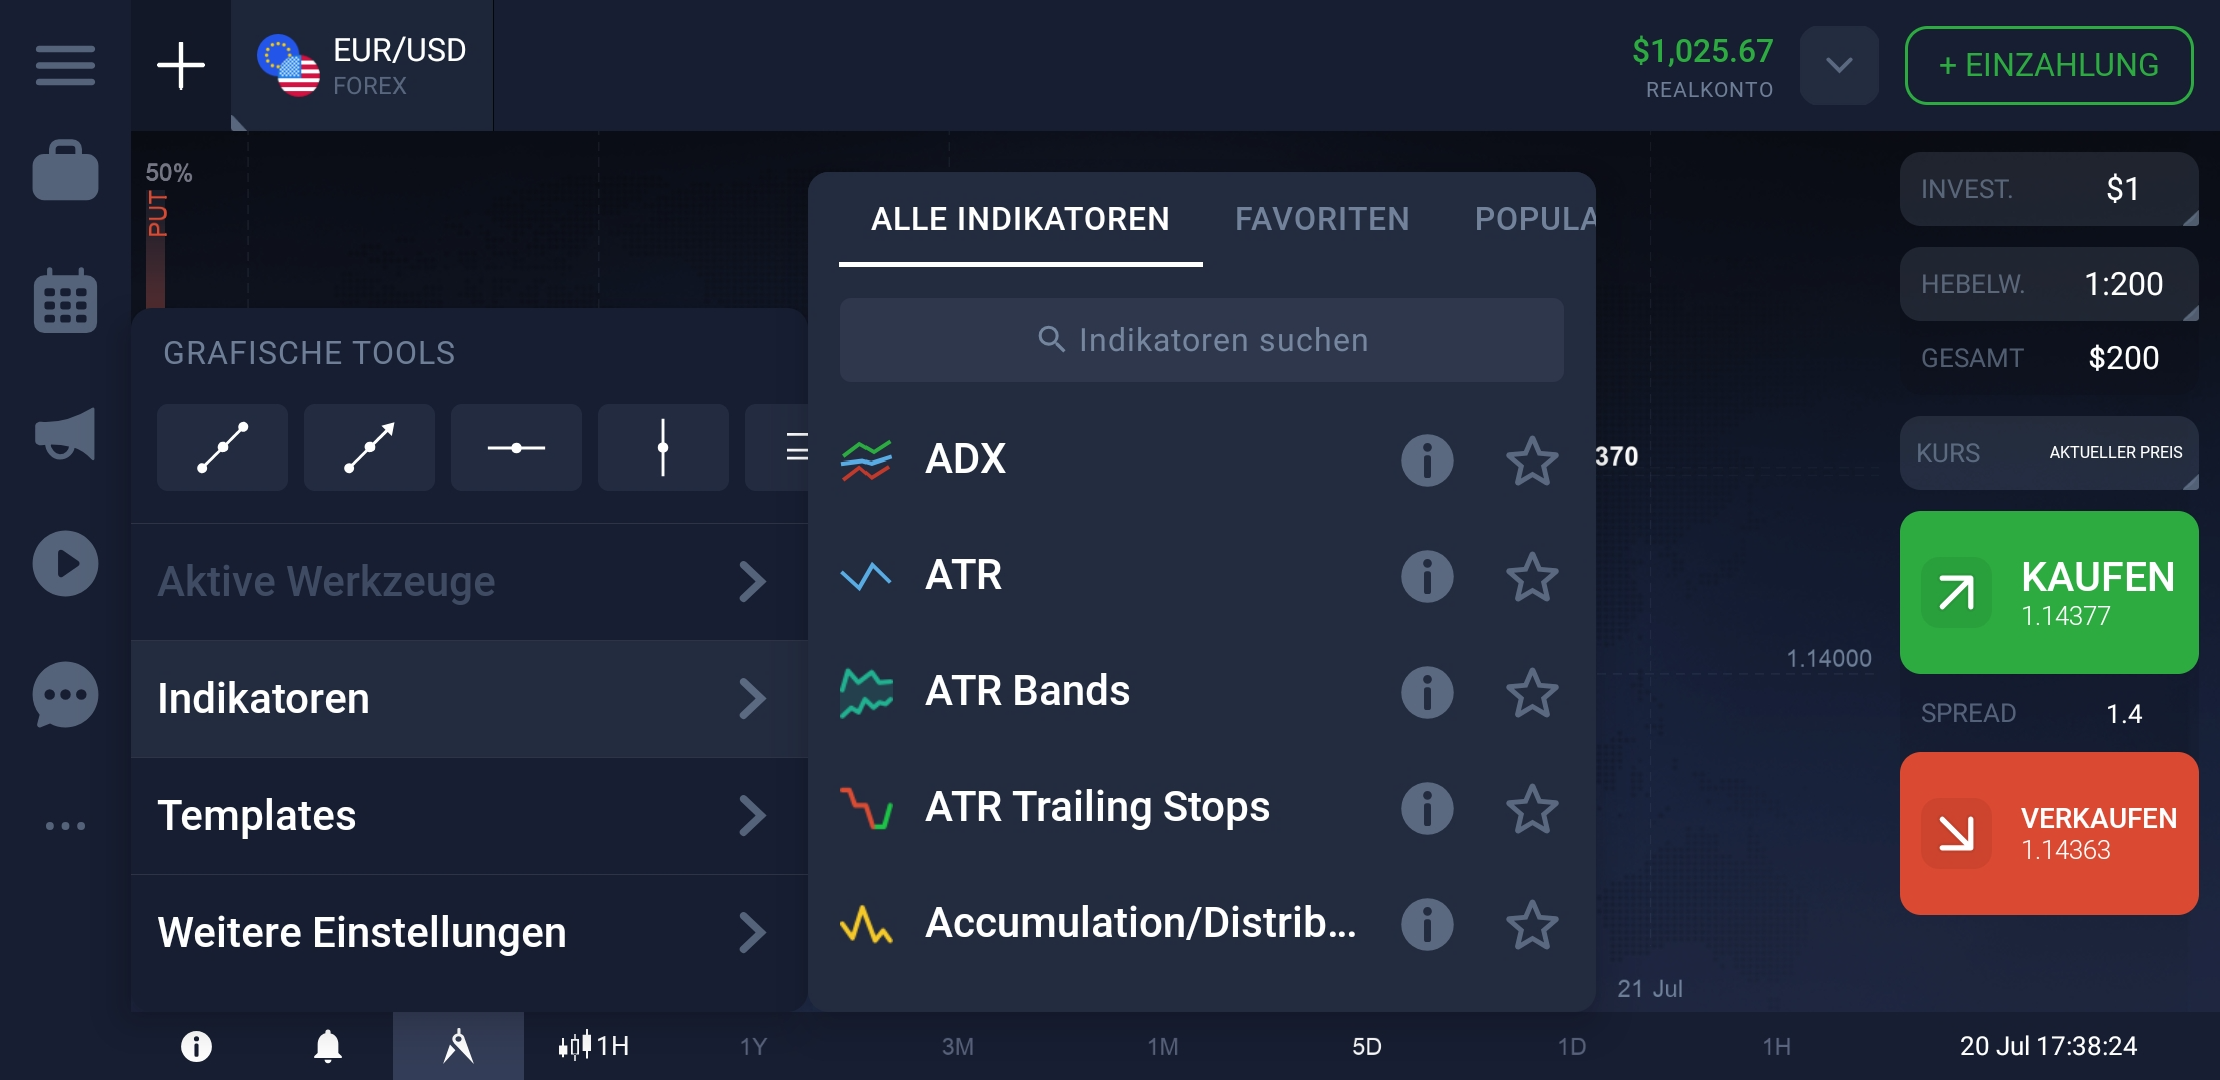 Indikatoren-in-der-Forex-Trading-App